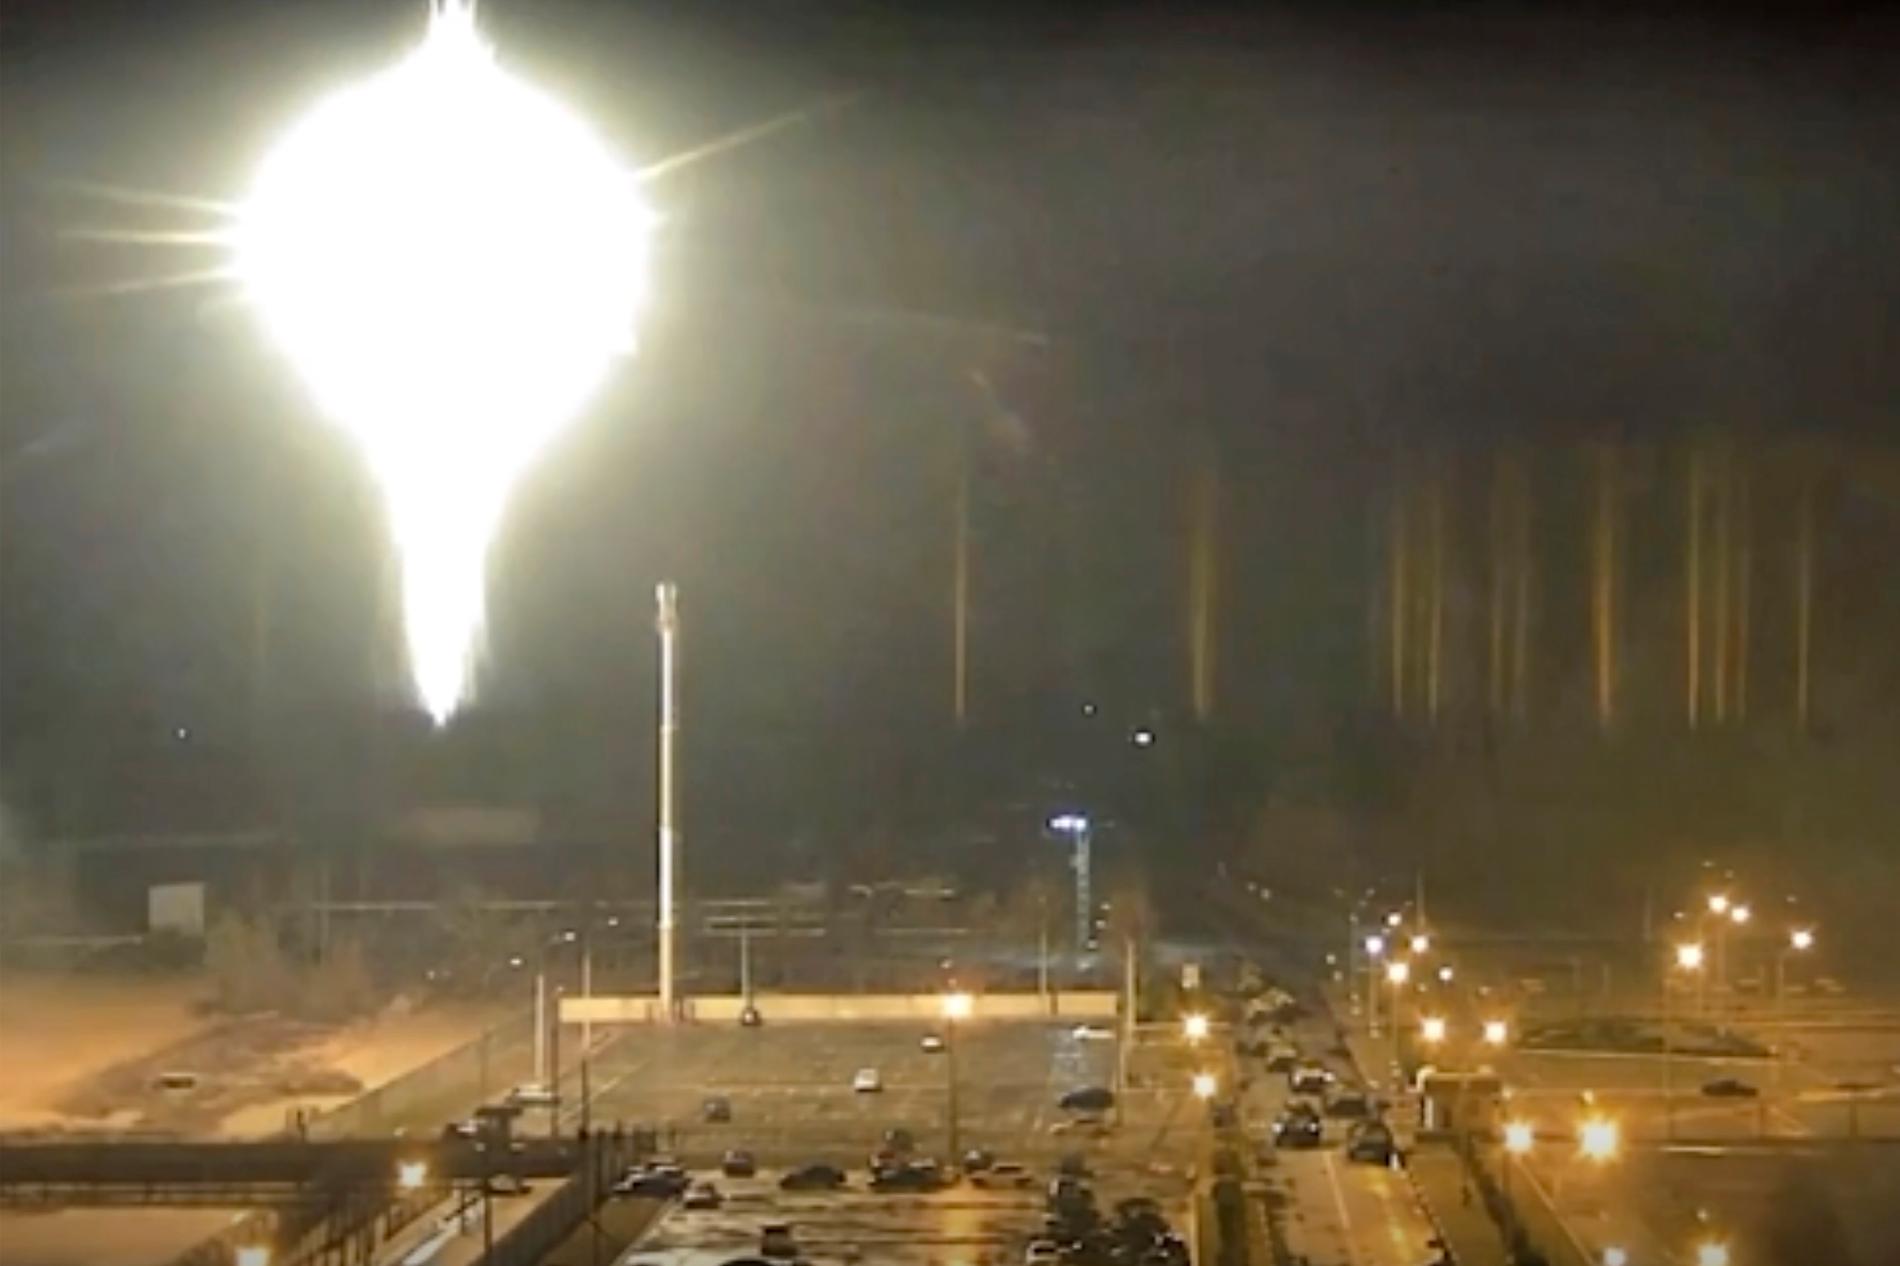 En video från det ukrainska kärnkraftverket Zaporizhzhia visar hur ett flammande föremål landar inne på kärnkraftverkets område i södra Ukraina.